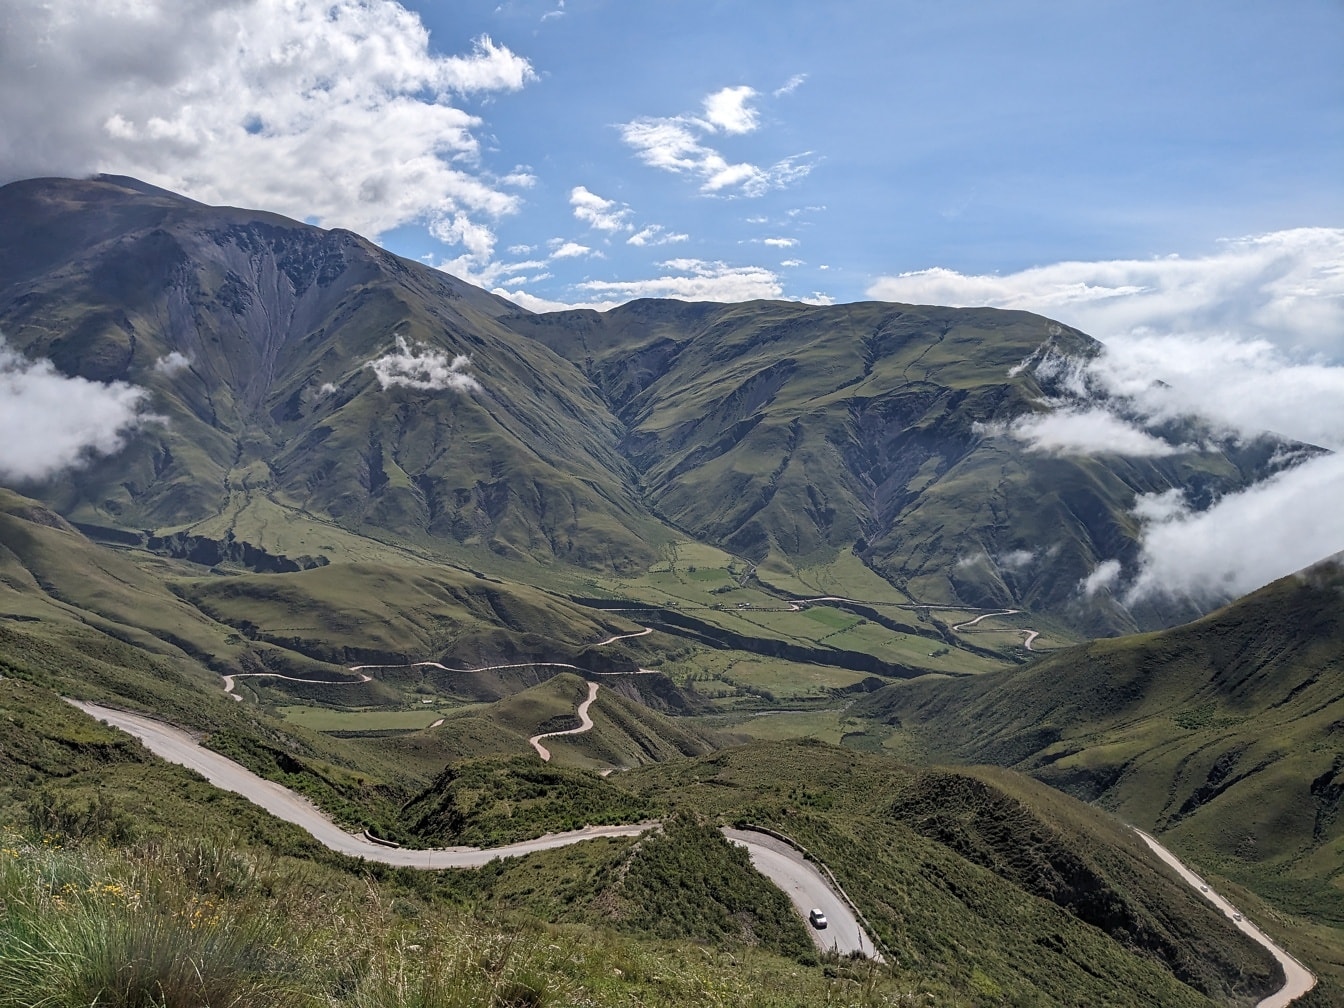 Drum care trece printr-o vale verde din Salta, în nord-vestul Argentinei